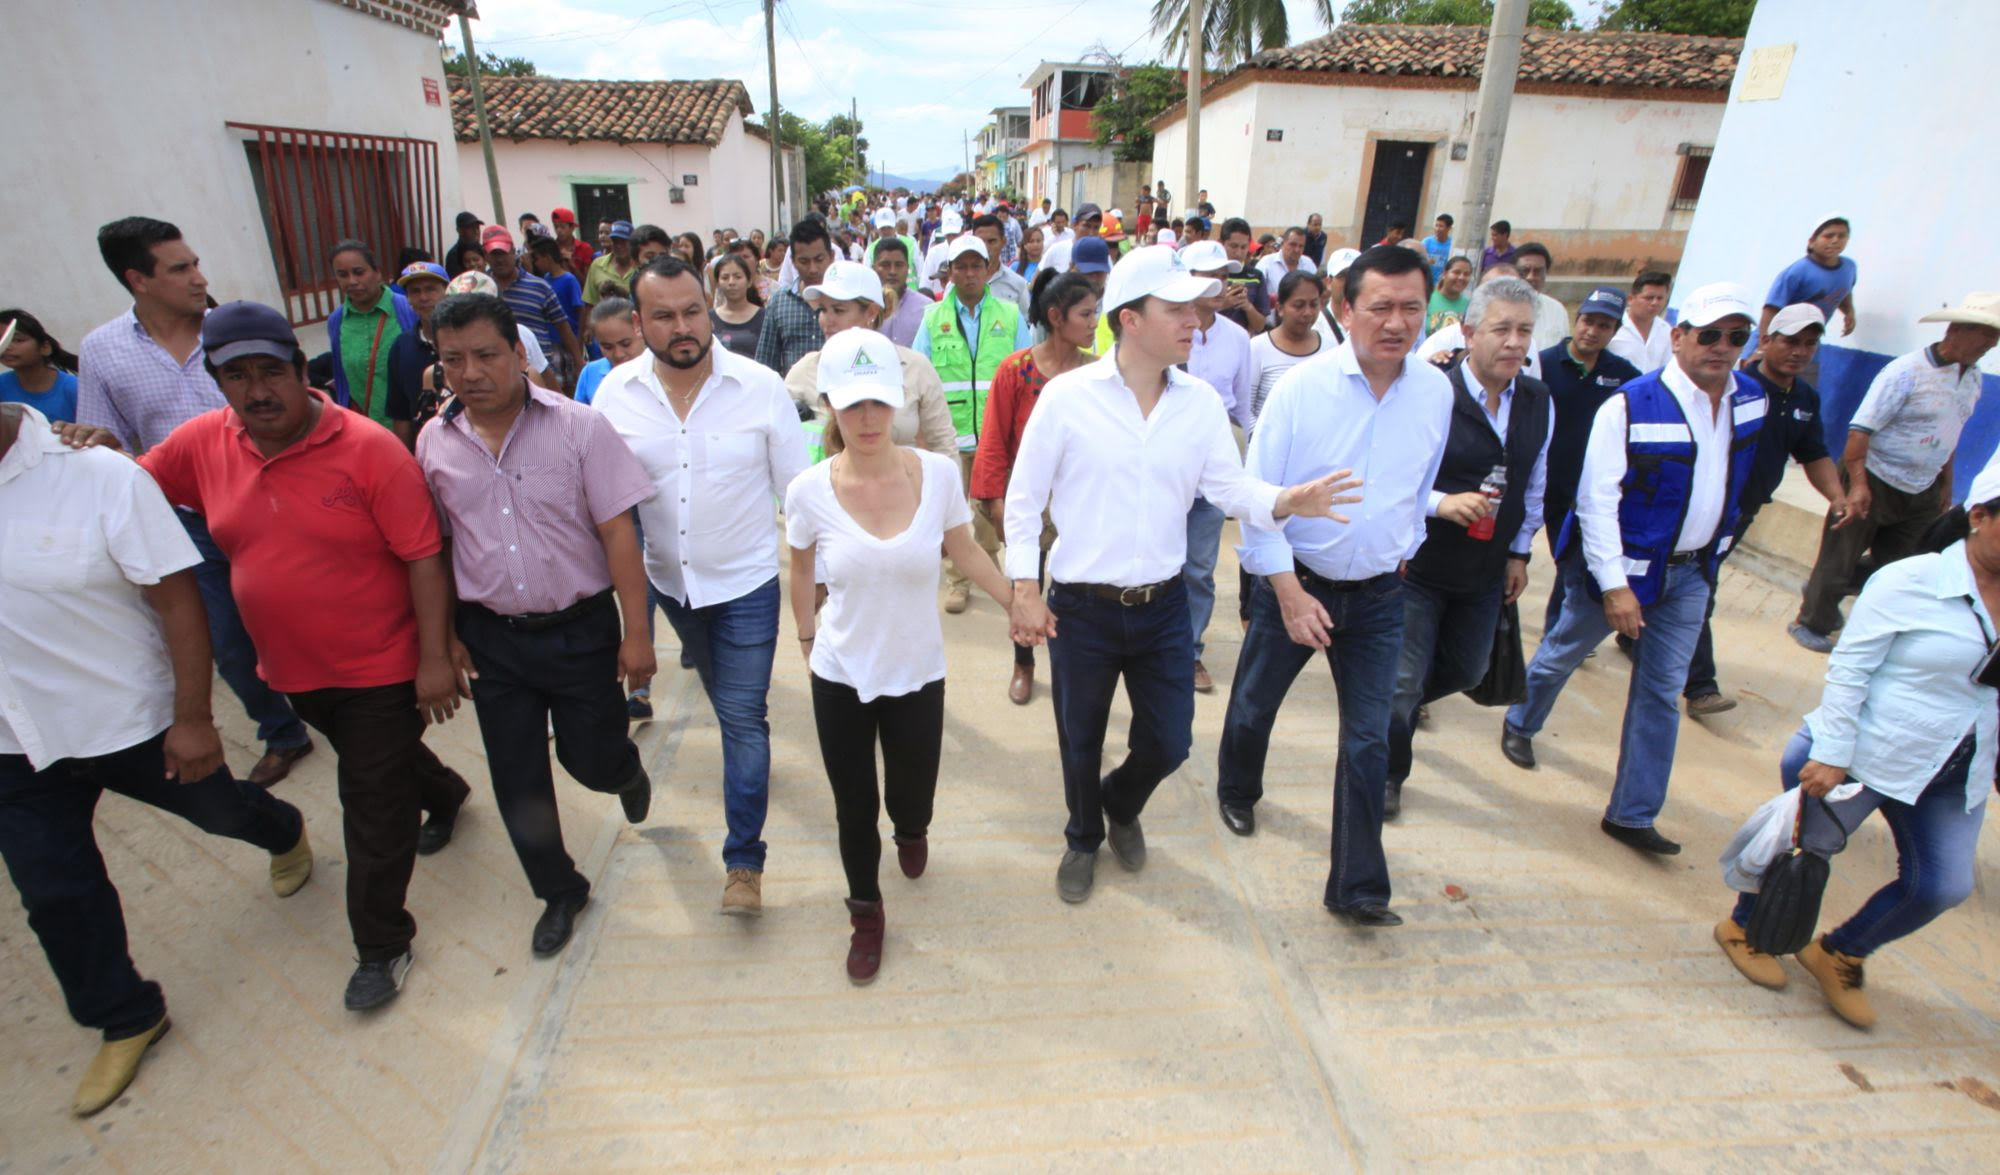 Por su parte, el gobernador Velasco Coello agradeció el respaldo que el Gobierno de la República ha dado a los habitantes de Chiapas y Oaxaca,  y puntualizó que continúan los recorridos por áreas afectadas con el propósito de escuchar y atender las necesidades de los habitantes.